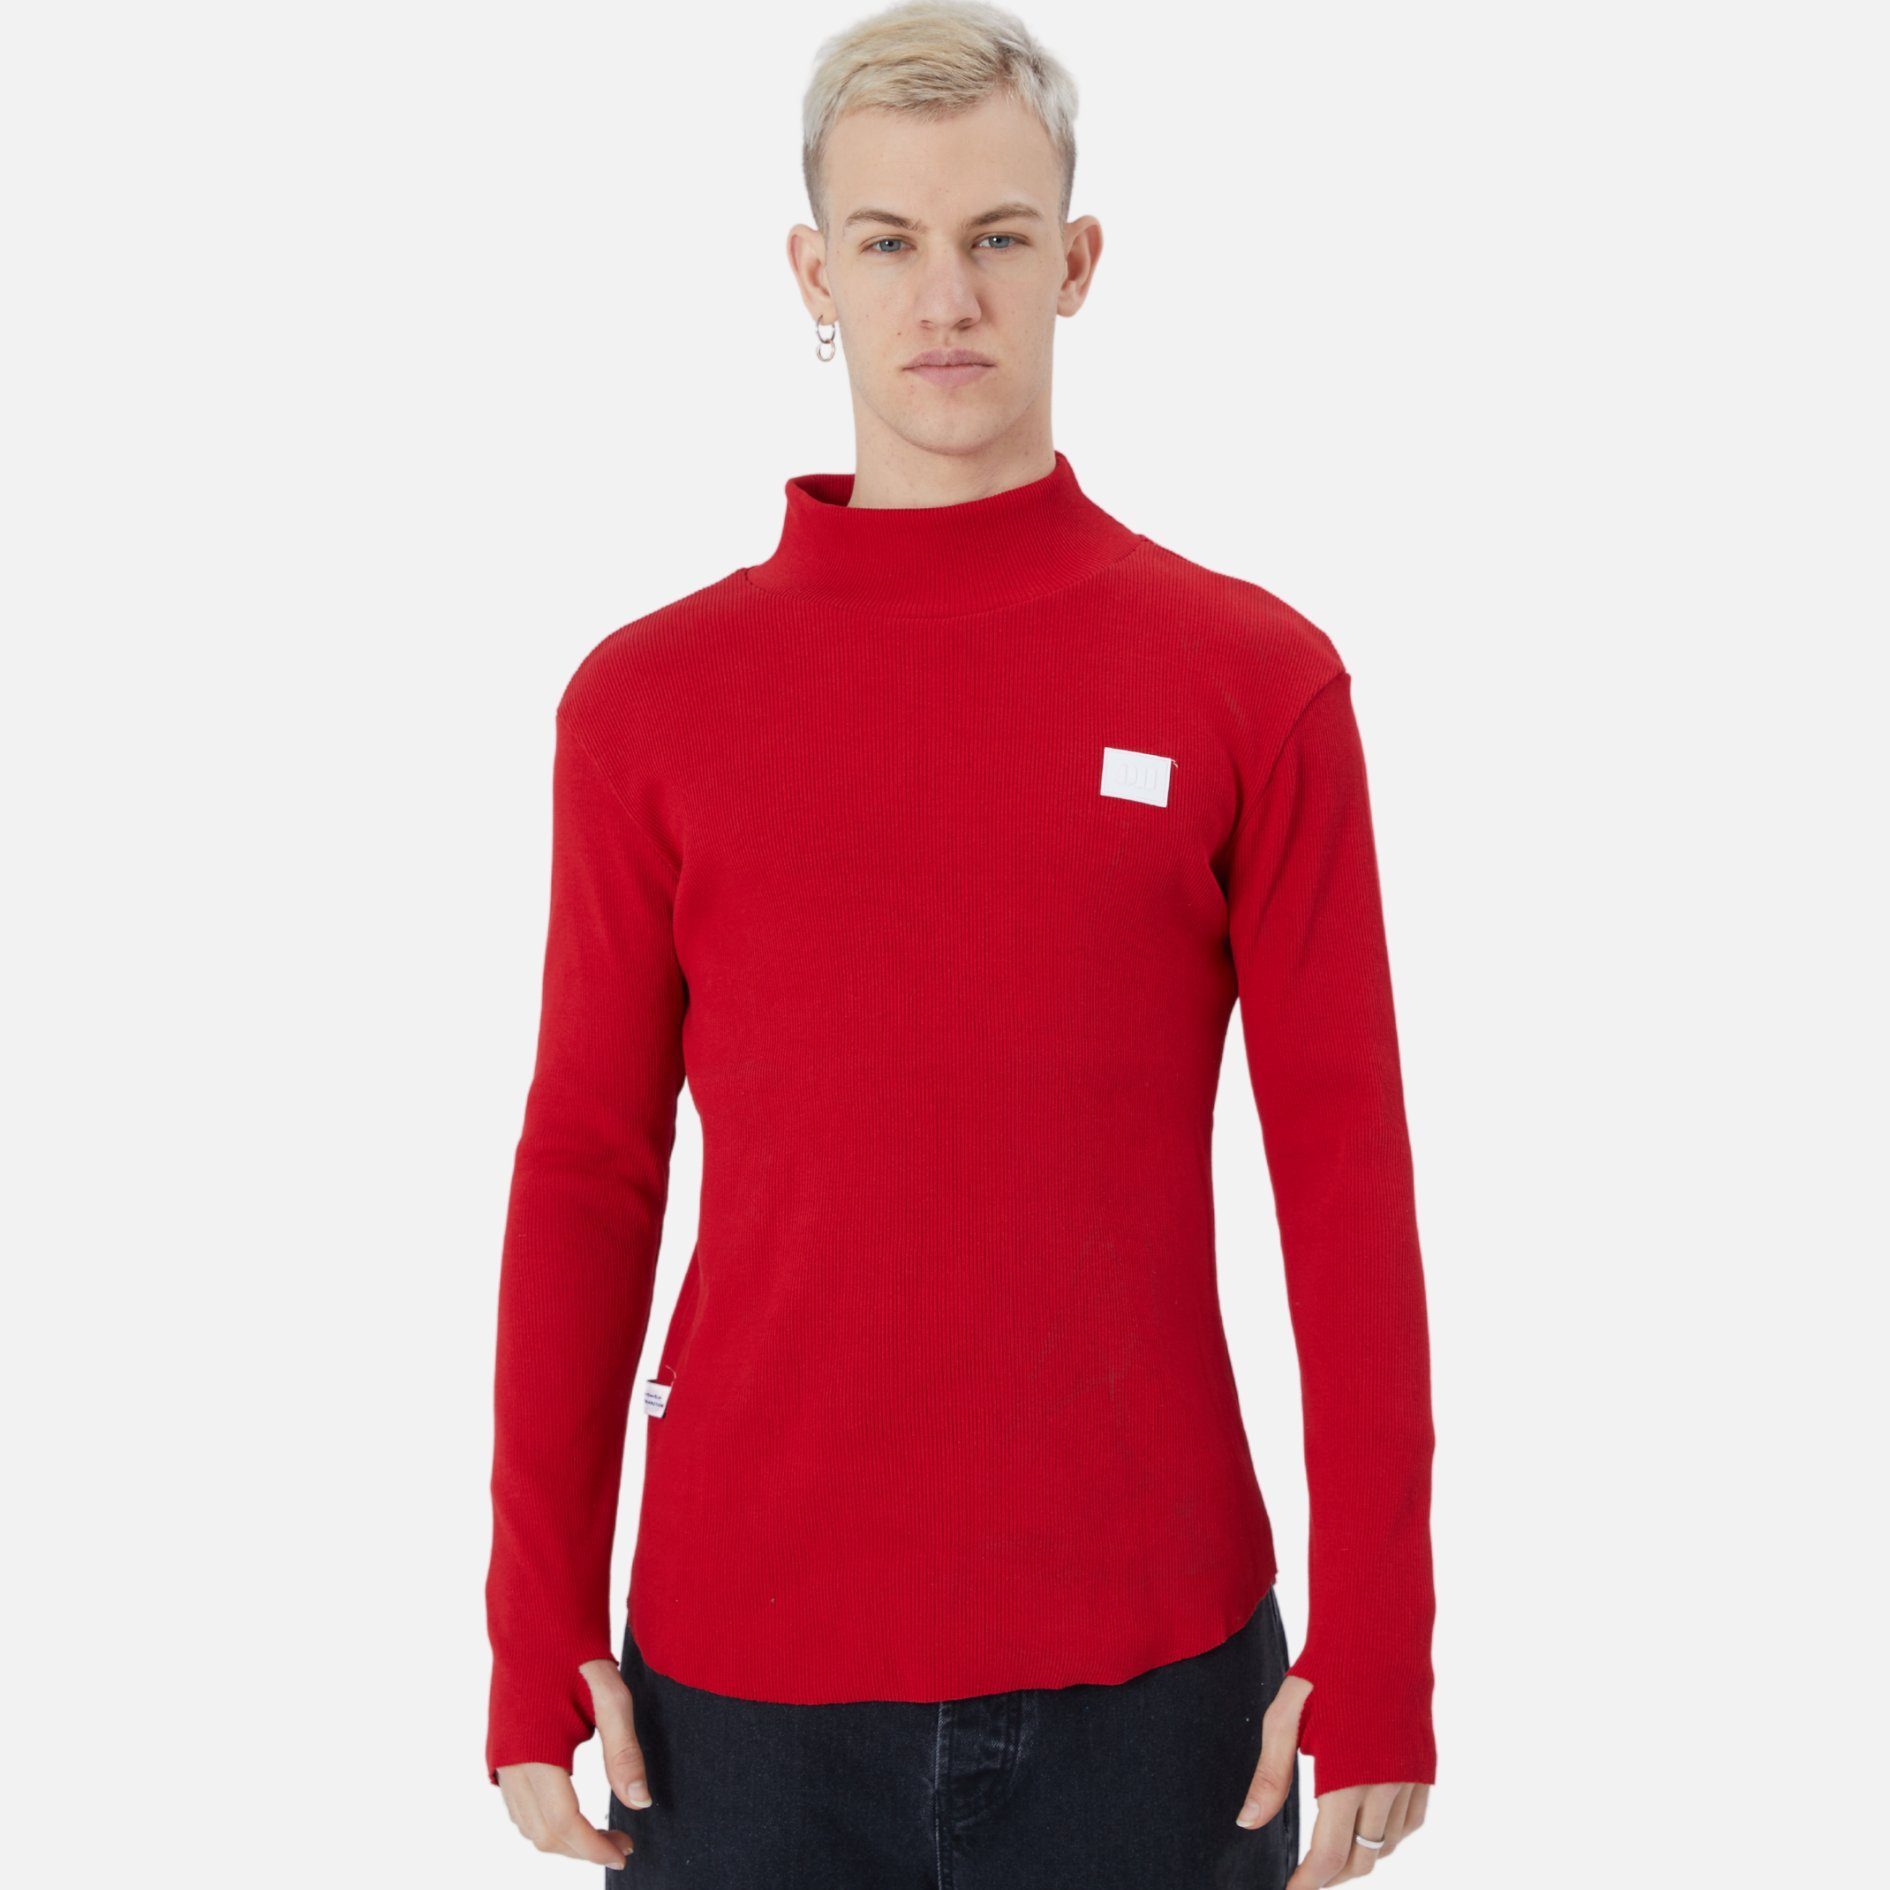 COFI Casuals Sweatshirt Herren Rundhals Sweatshirt Regular Fit Pullover Rot